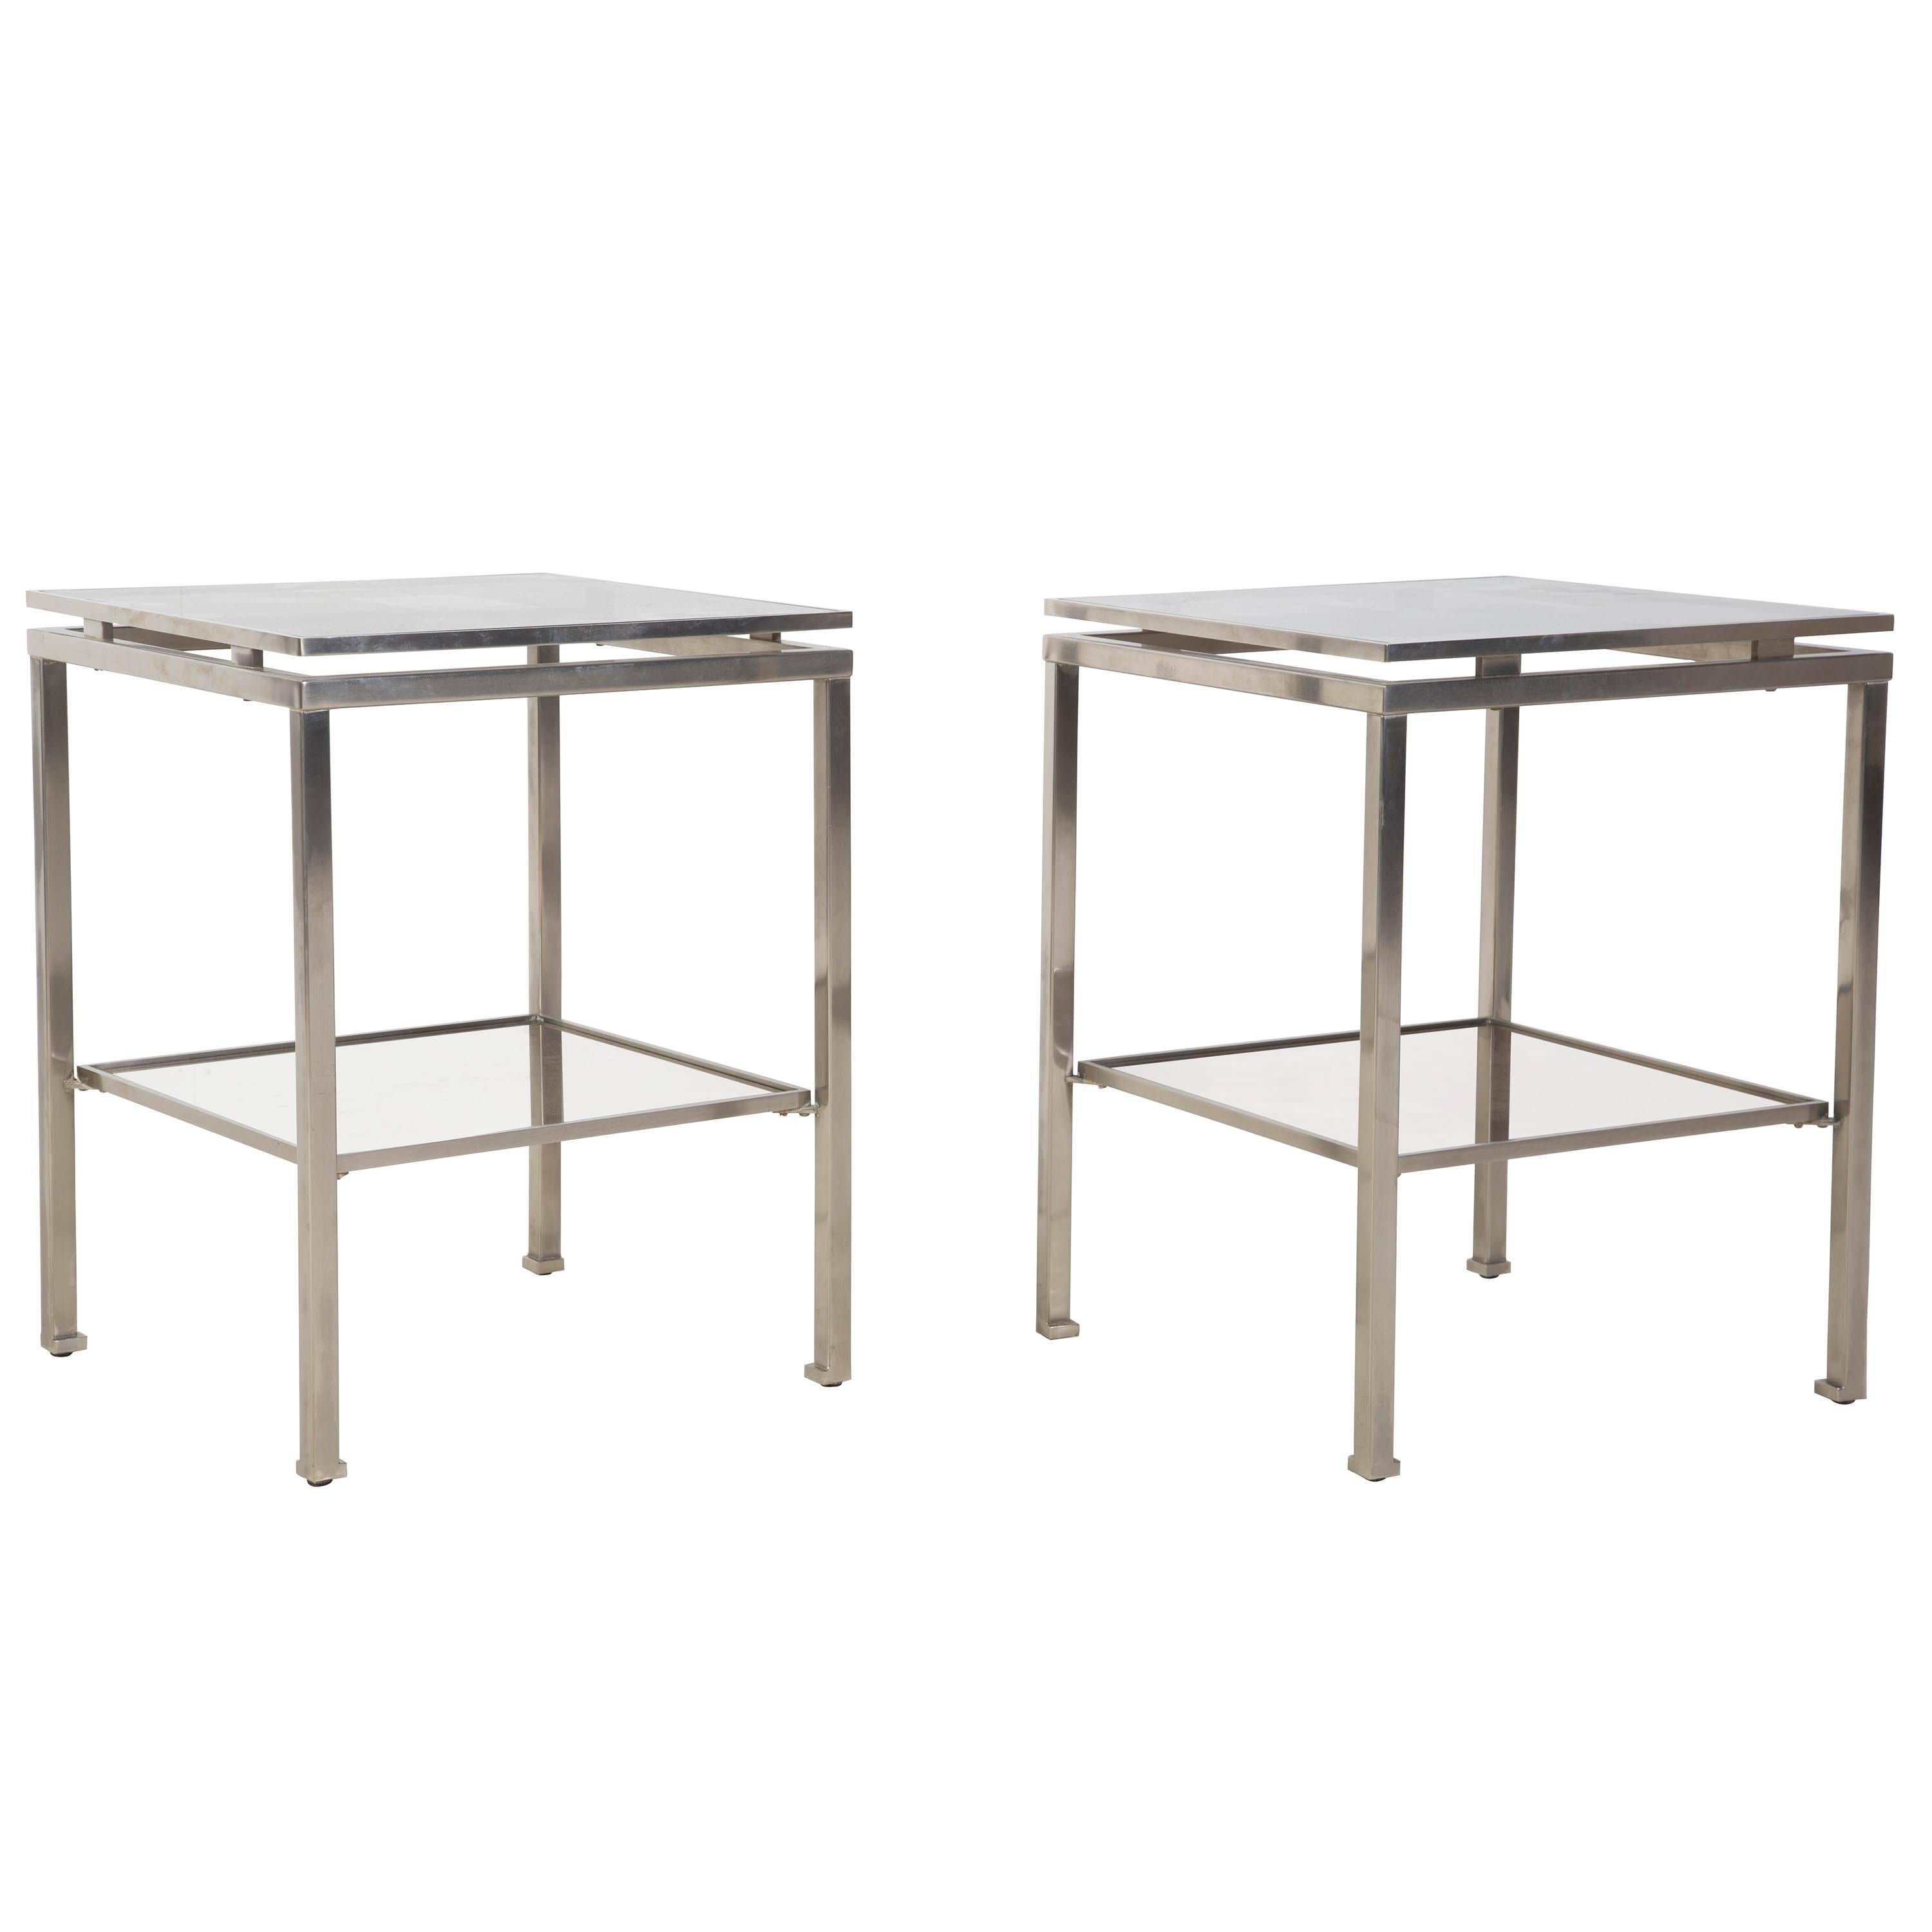 A pair of Guy Lefevre designed brushed steel side tables.